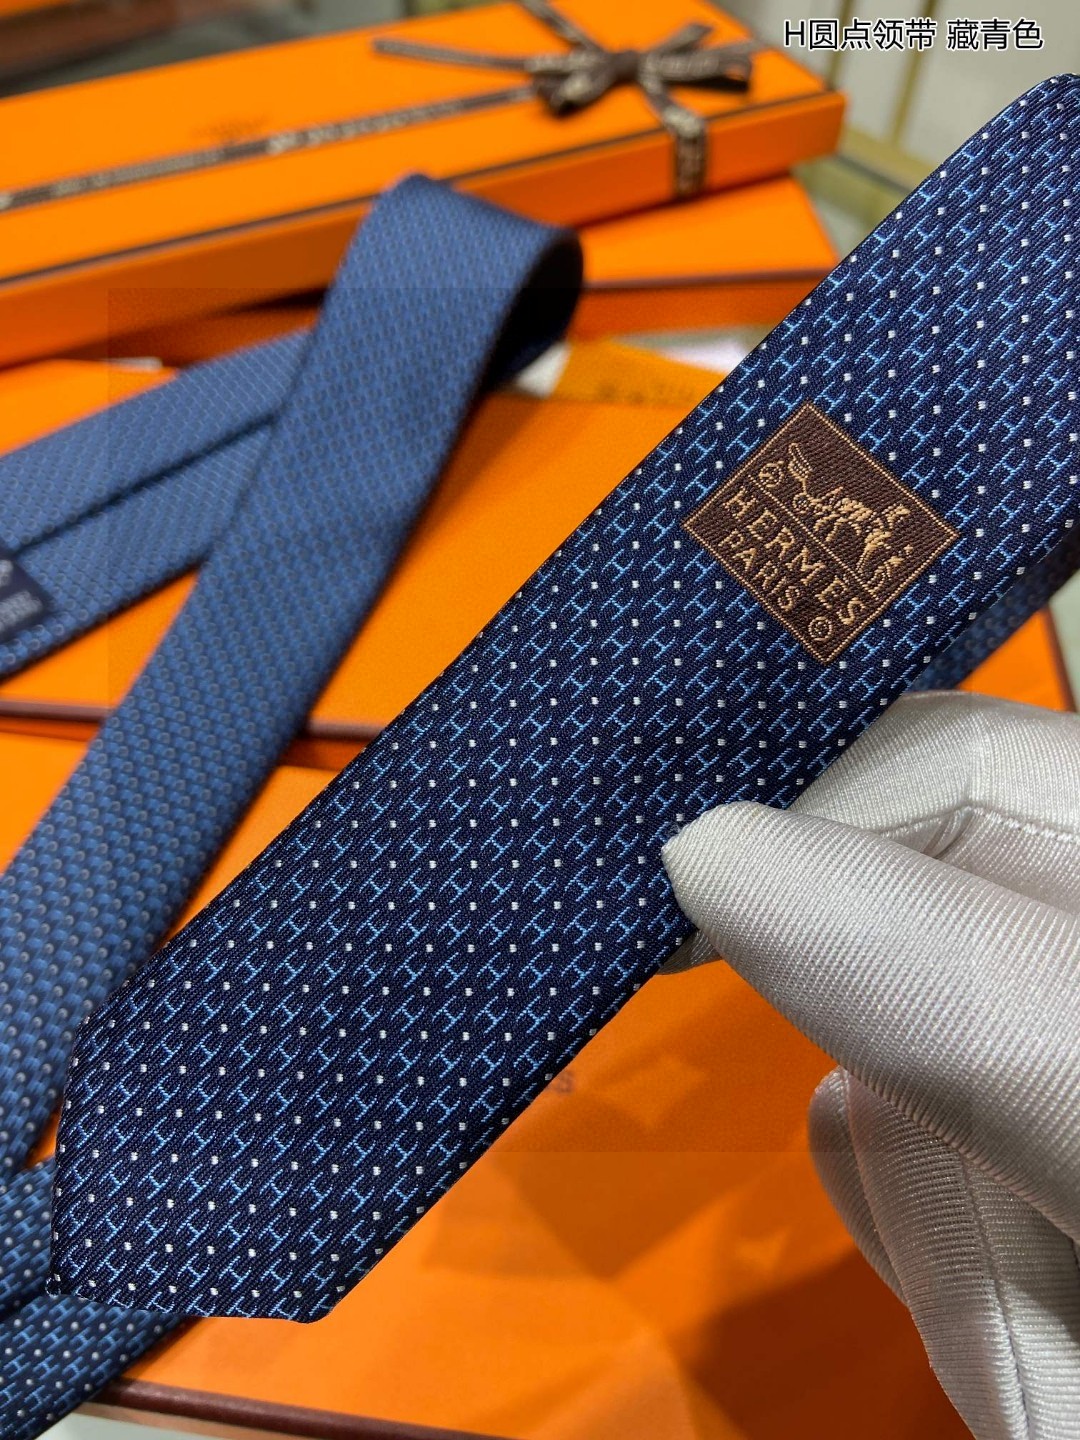 特价男士新款领带系列H圆点领带稀有H家每年都有一千条不同印花的领带面世从最初的多以几何图案表现骑术活动为